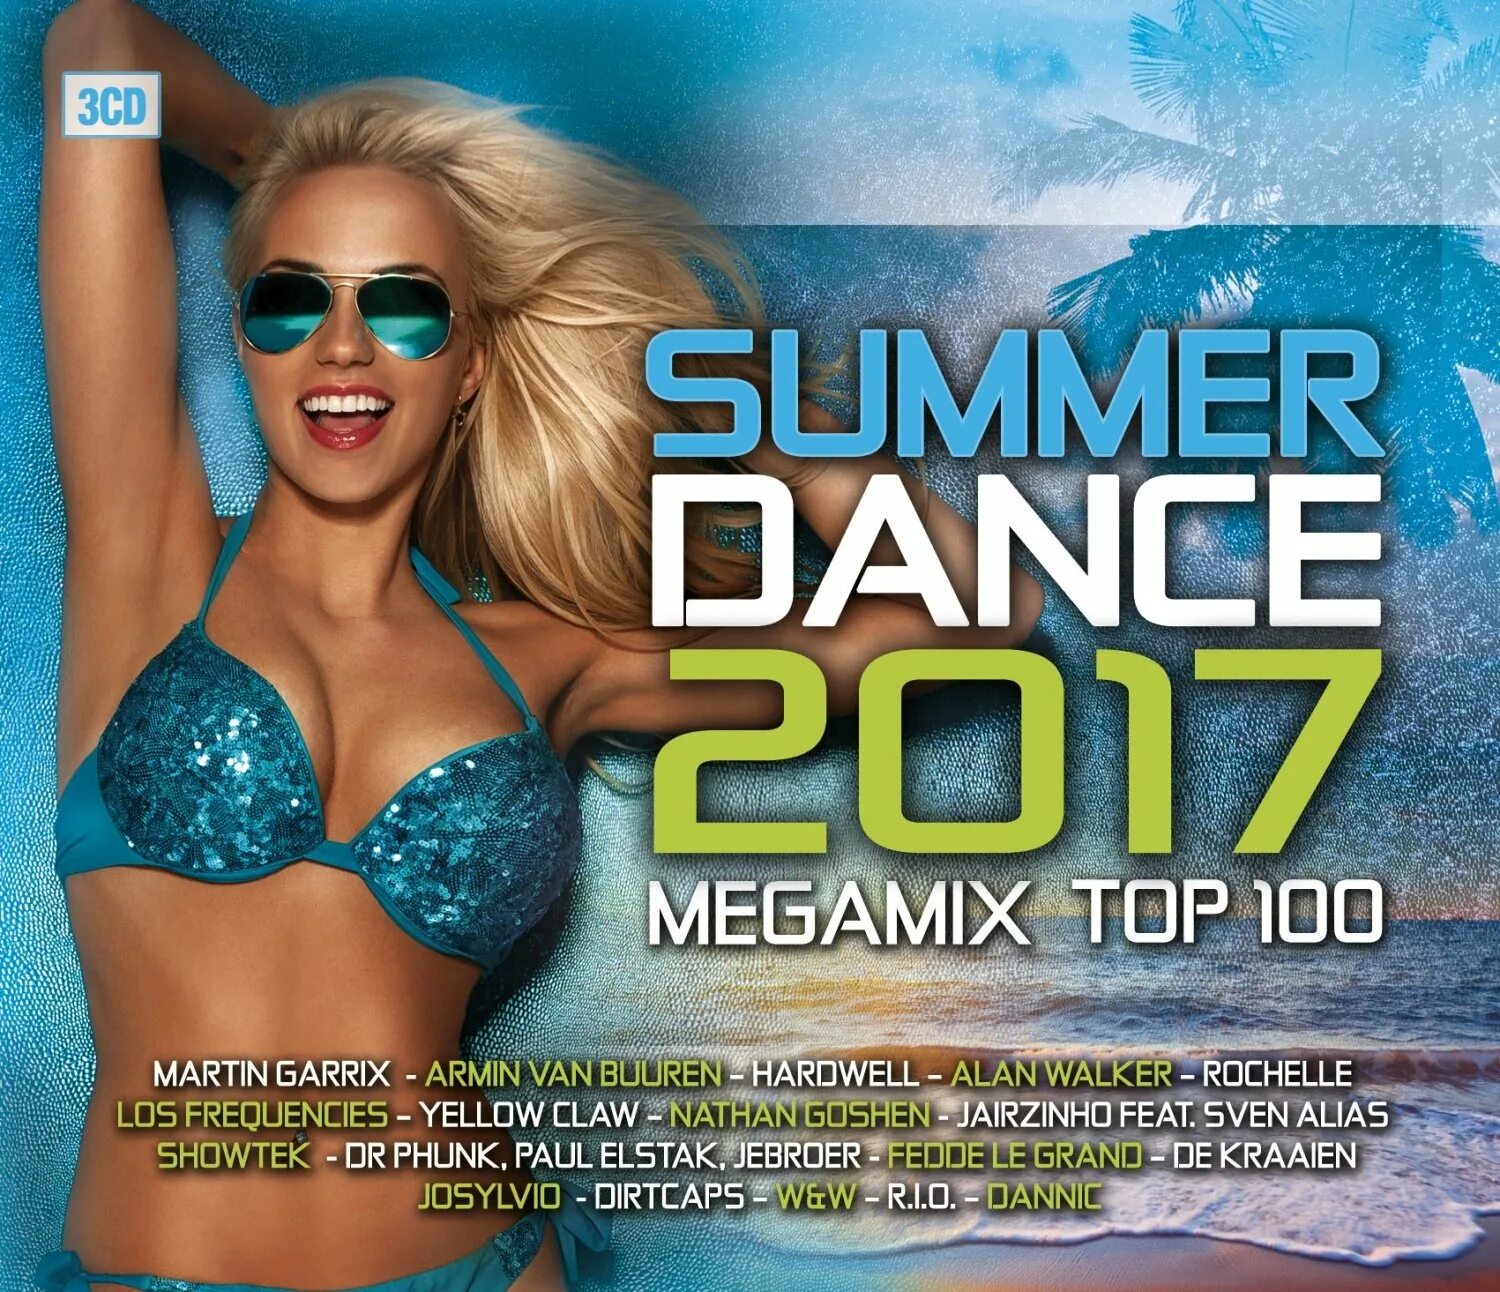 Мегамикс. Summer Dance обложки. Ру ТВ мегамикс. Megamix фото. Summer dance remix